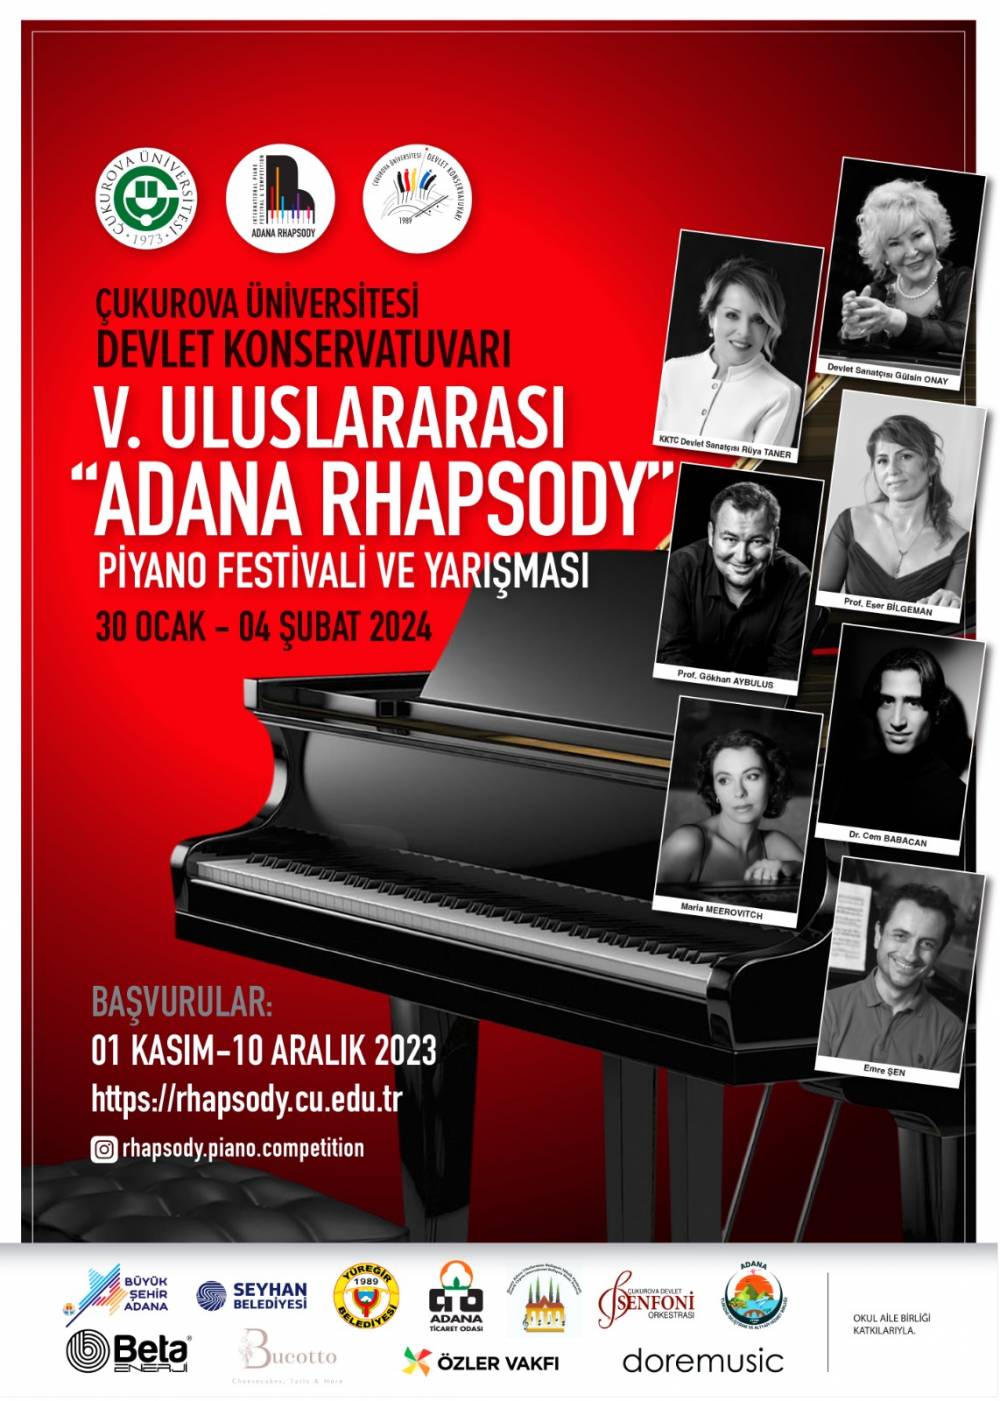 "Uluslararası Adana Rhapsody Piyano Festivali ve Yarışması" 30 Ocak-4 Şubat'ta Yapılacak